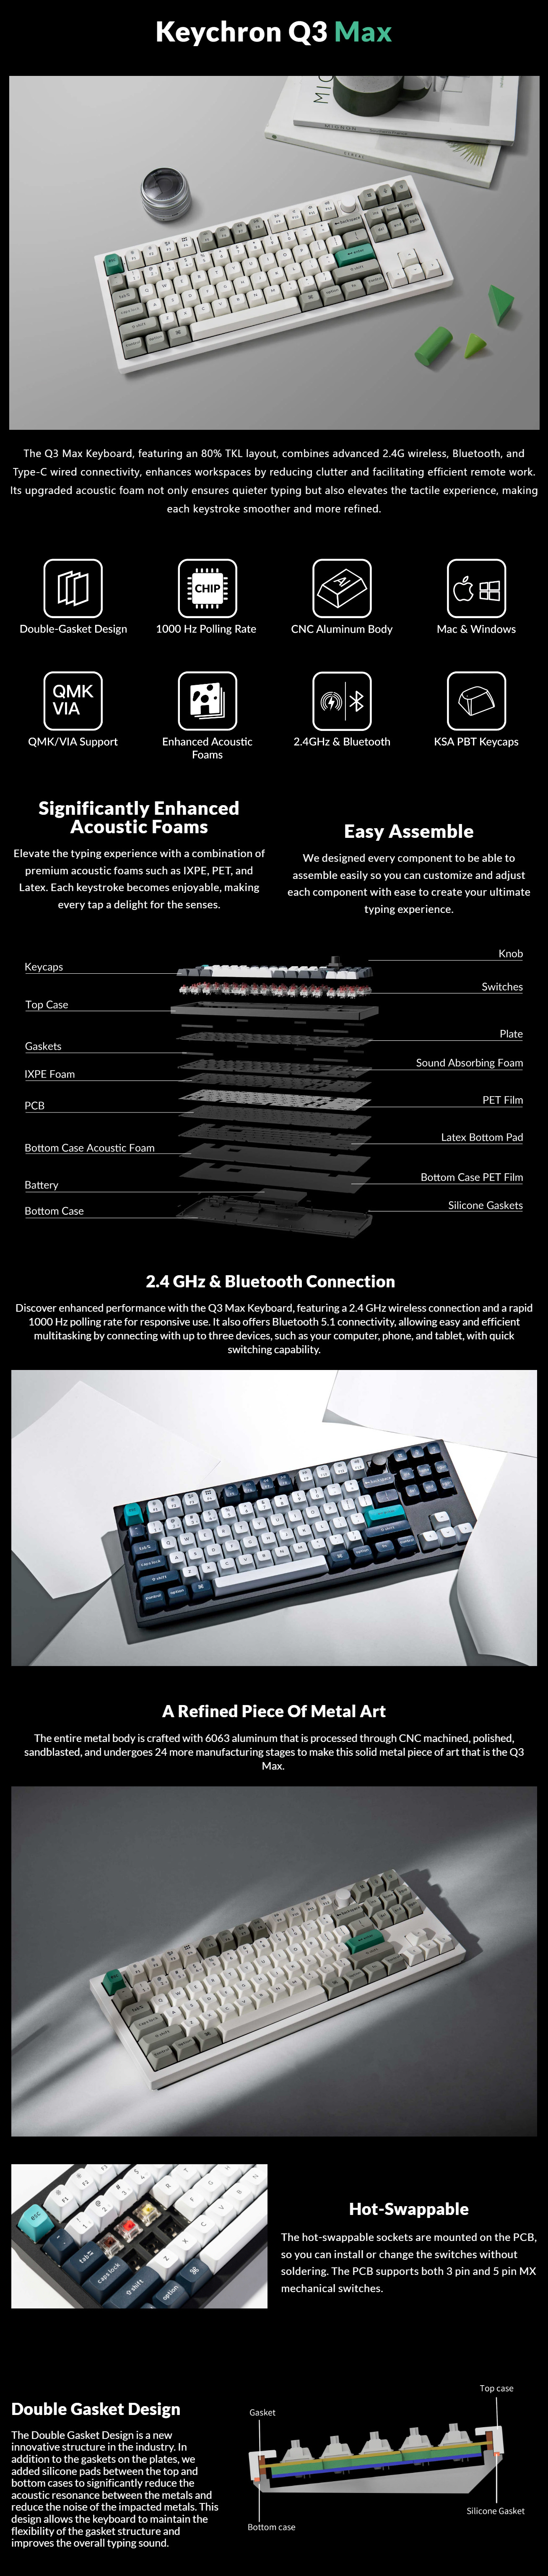 Keyboards-Keychron-Q3-Max-80-TKL-Full-Assembled-Knob-RGB-Hot-Swap-Gateron-Wireless-QMK-Custom-Keyboard-Brown-Switch-Black-KBKCQ3MM3-1